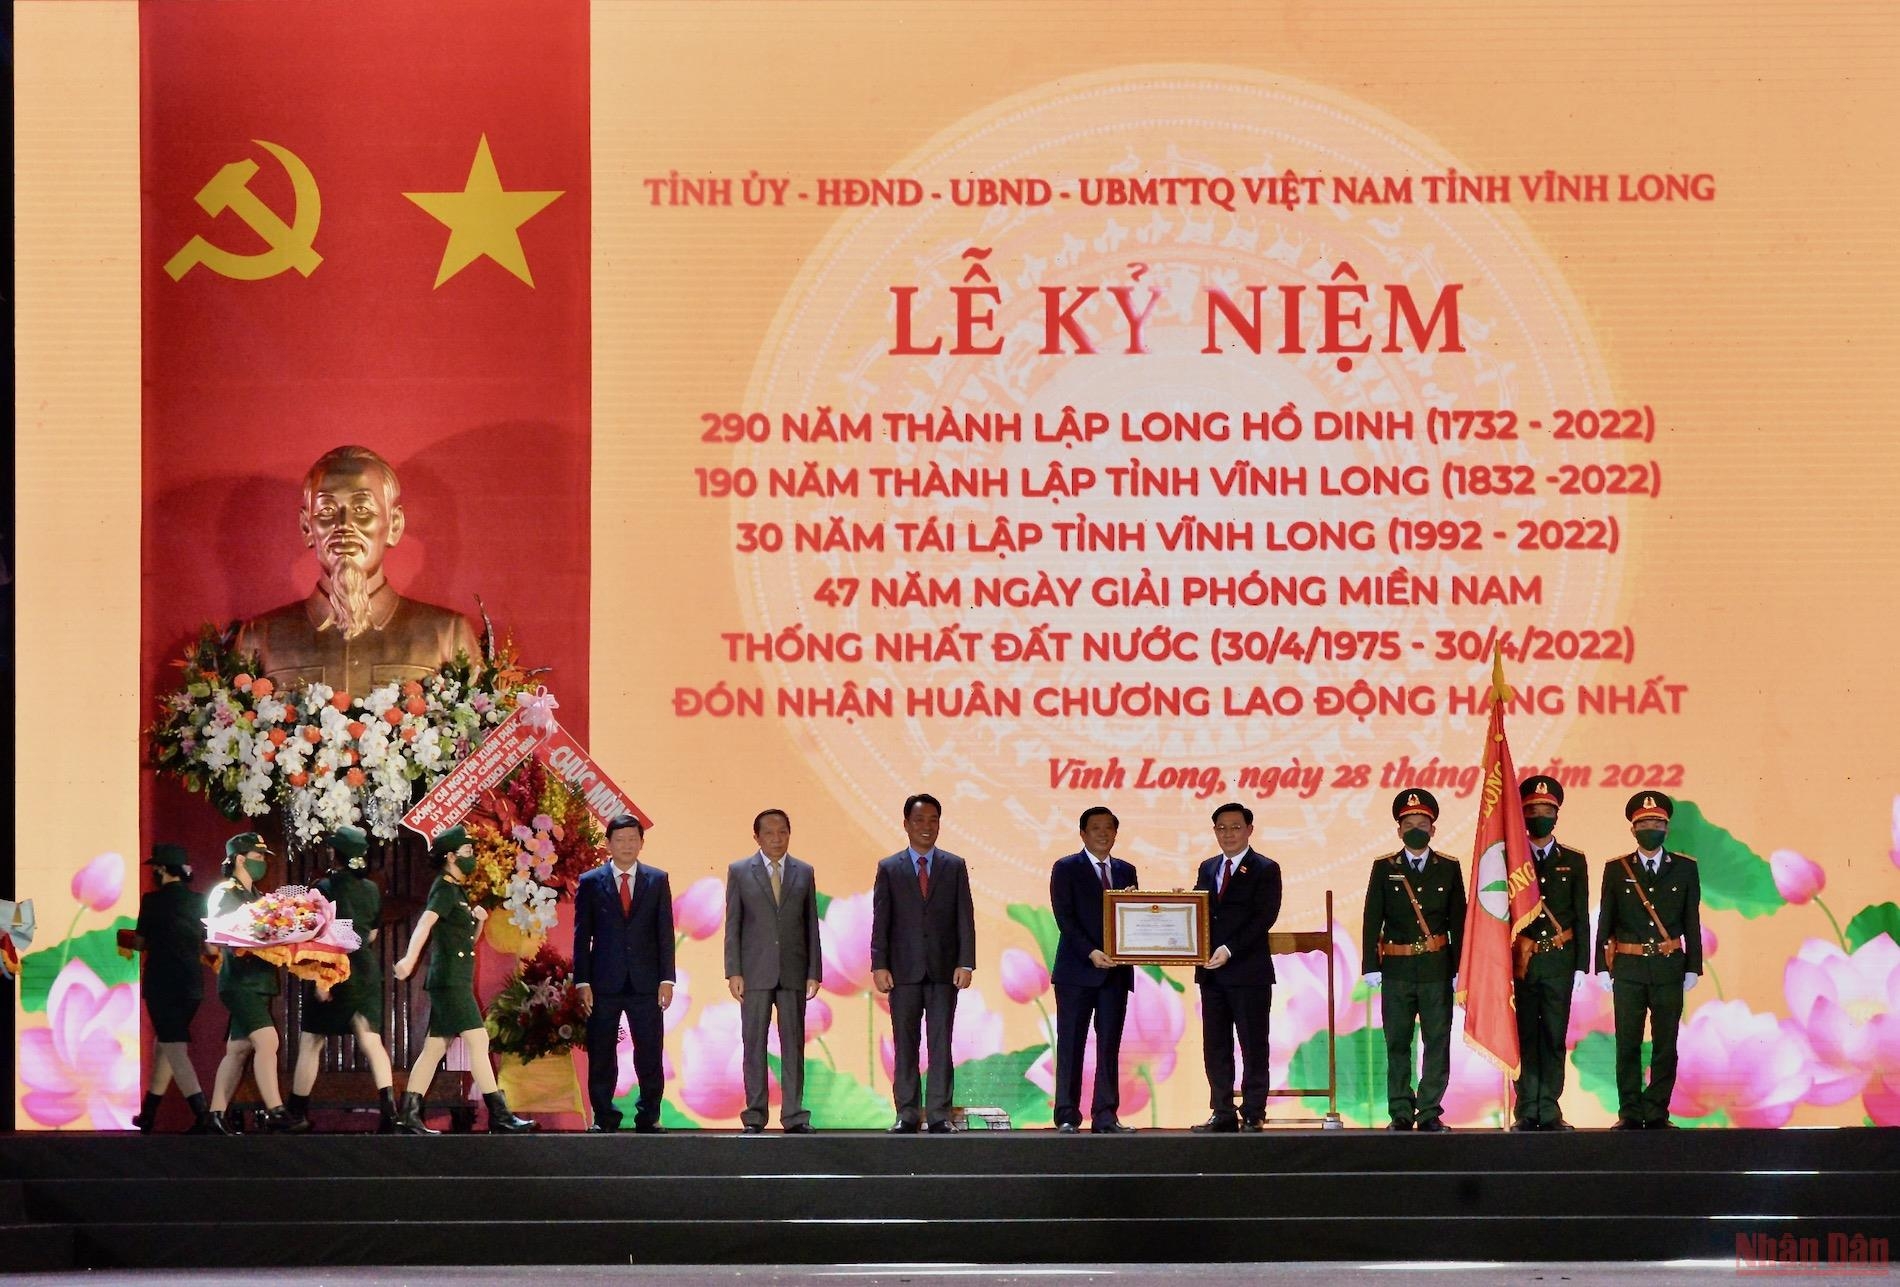 国会主席王廷惠出席龙湖营成立290周年、永隆省成立190周年、永隆省重设30周年庆典。